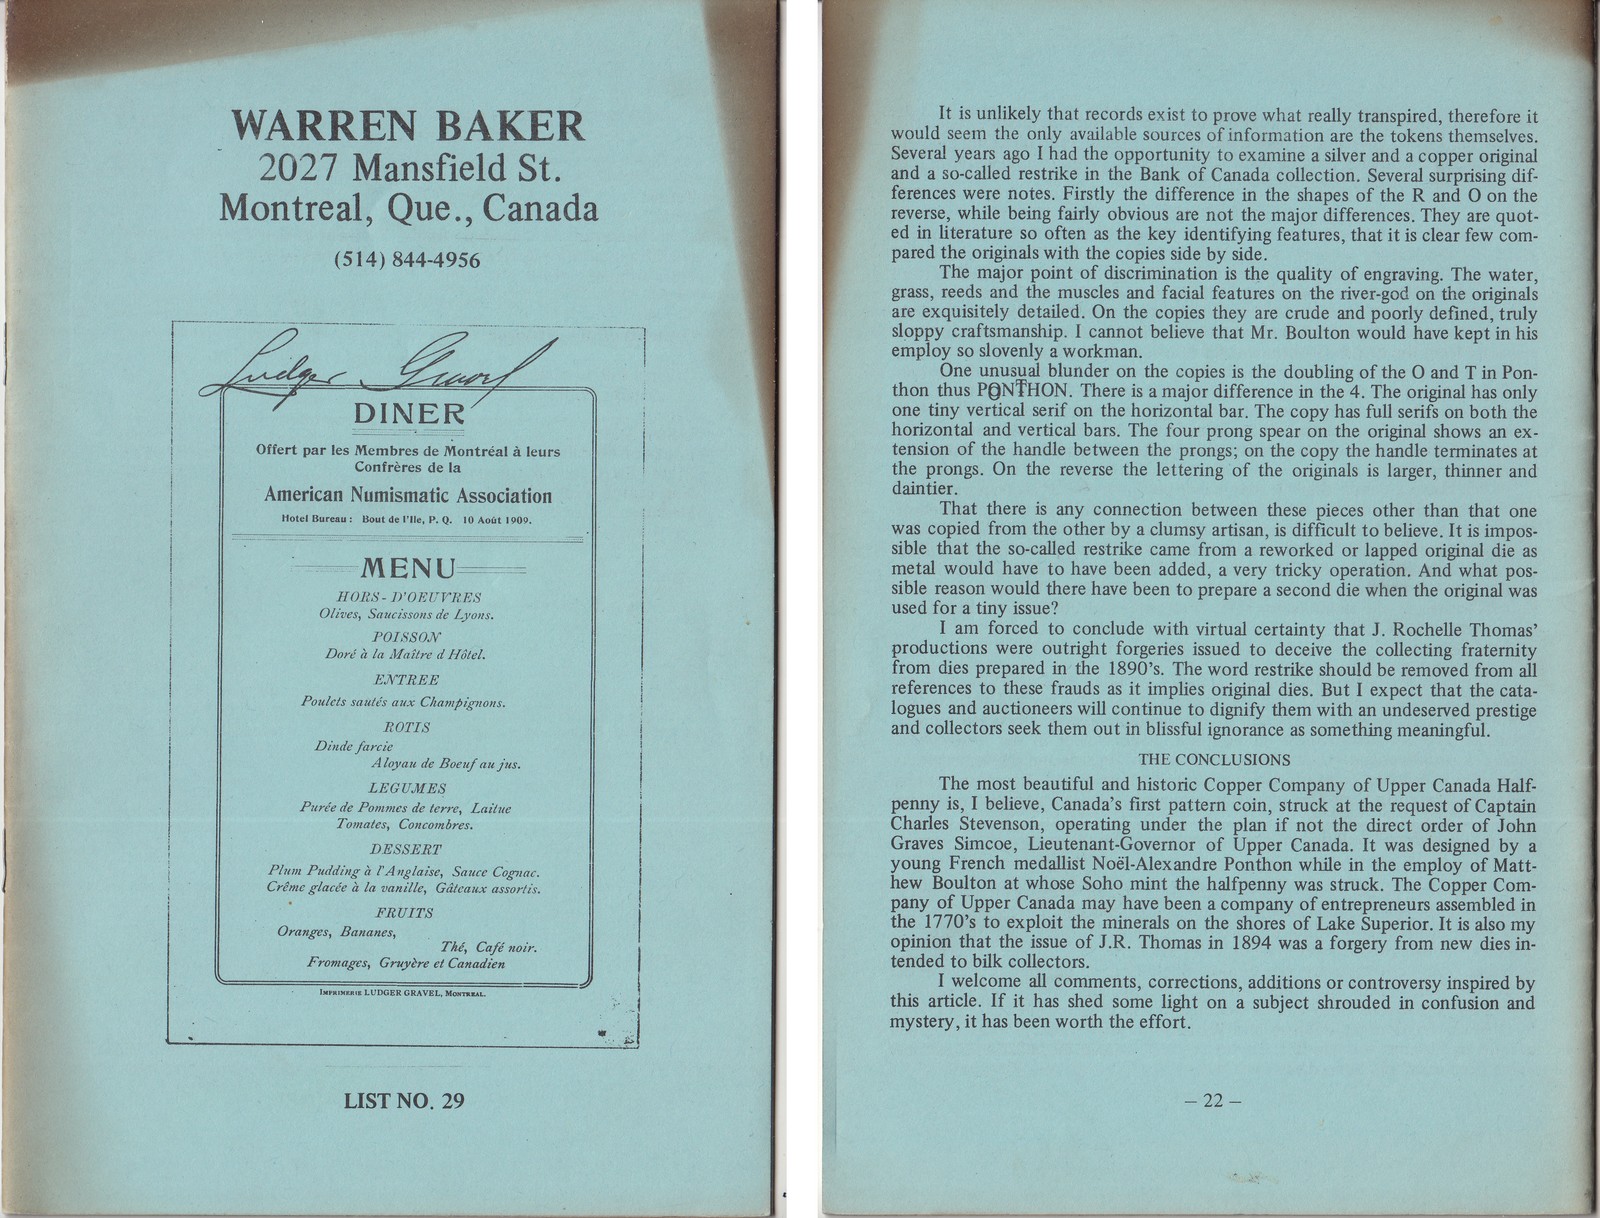 À Vendre - Catalogue Warren Baker #29 - Cover.jpg